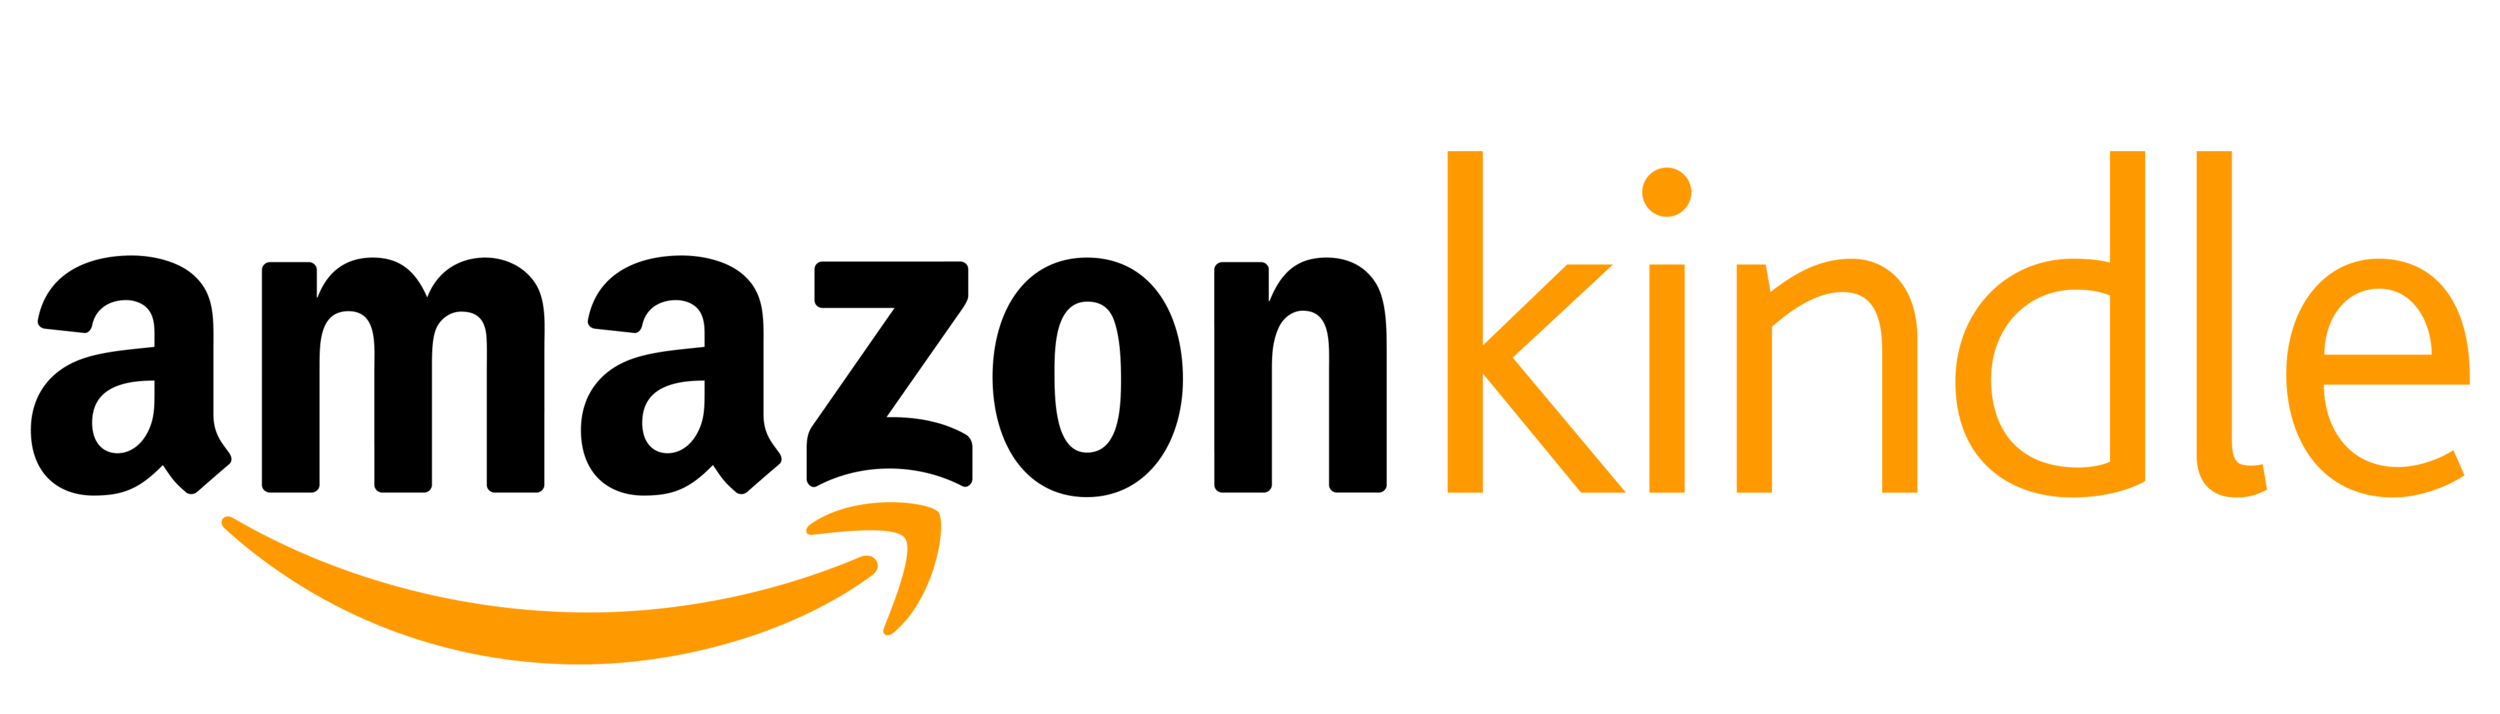 Amazon-Kindle-logo.png